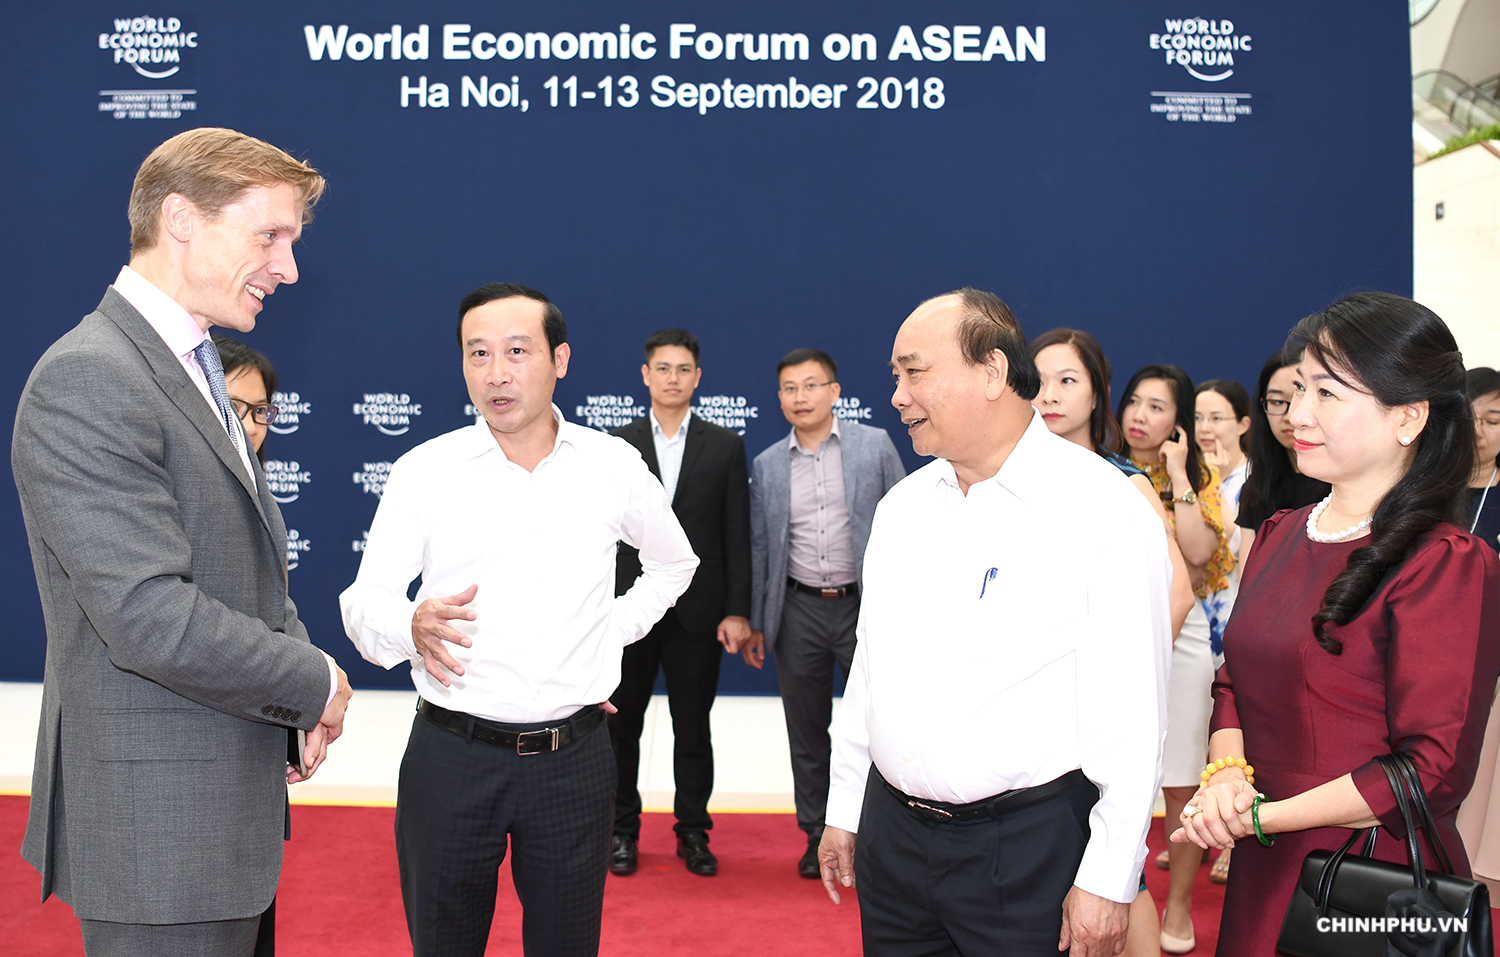 ຫວຽດນາມ ກຽມພ້ອມ ໃຫ້ແກ່ ກອງປະຊຸມ  WEF ASEAN 2018  ທີ່ຈະດຳເນີນໃນມື້ອື່ນແລ້ວ